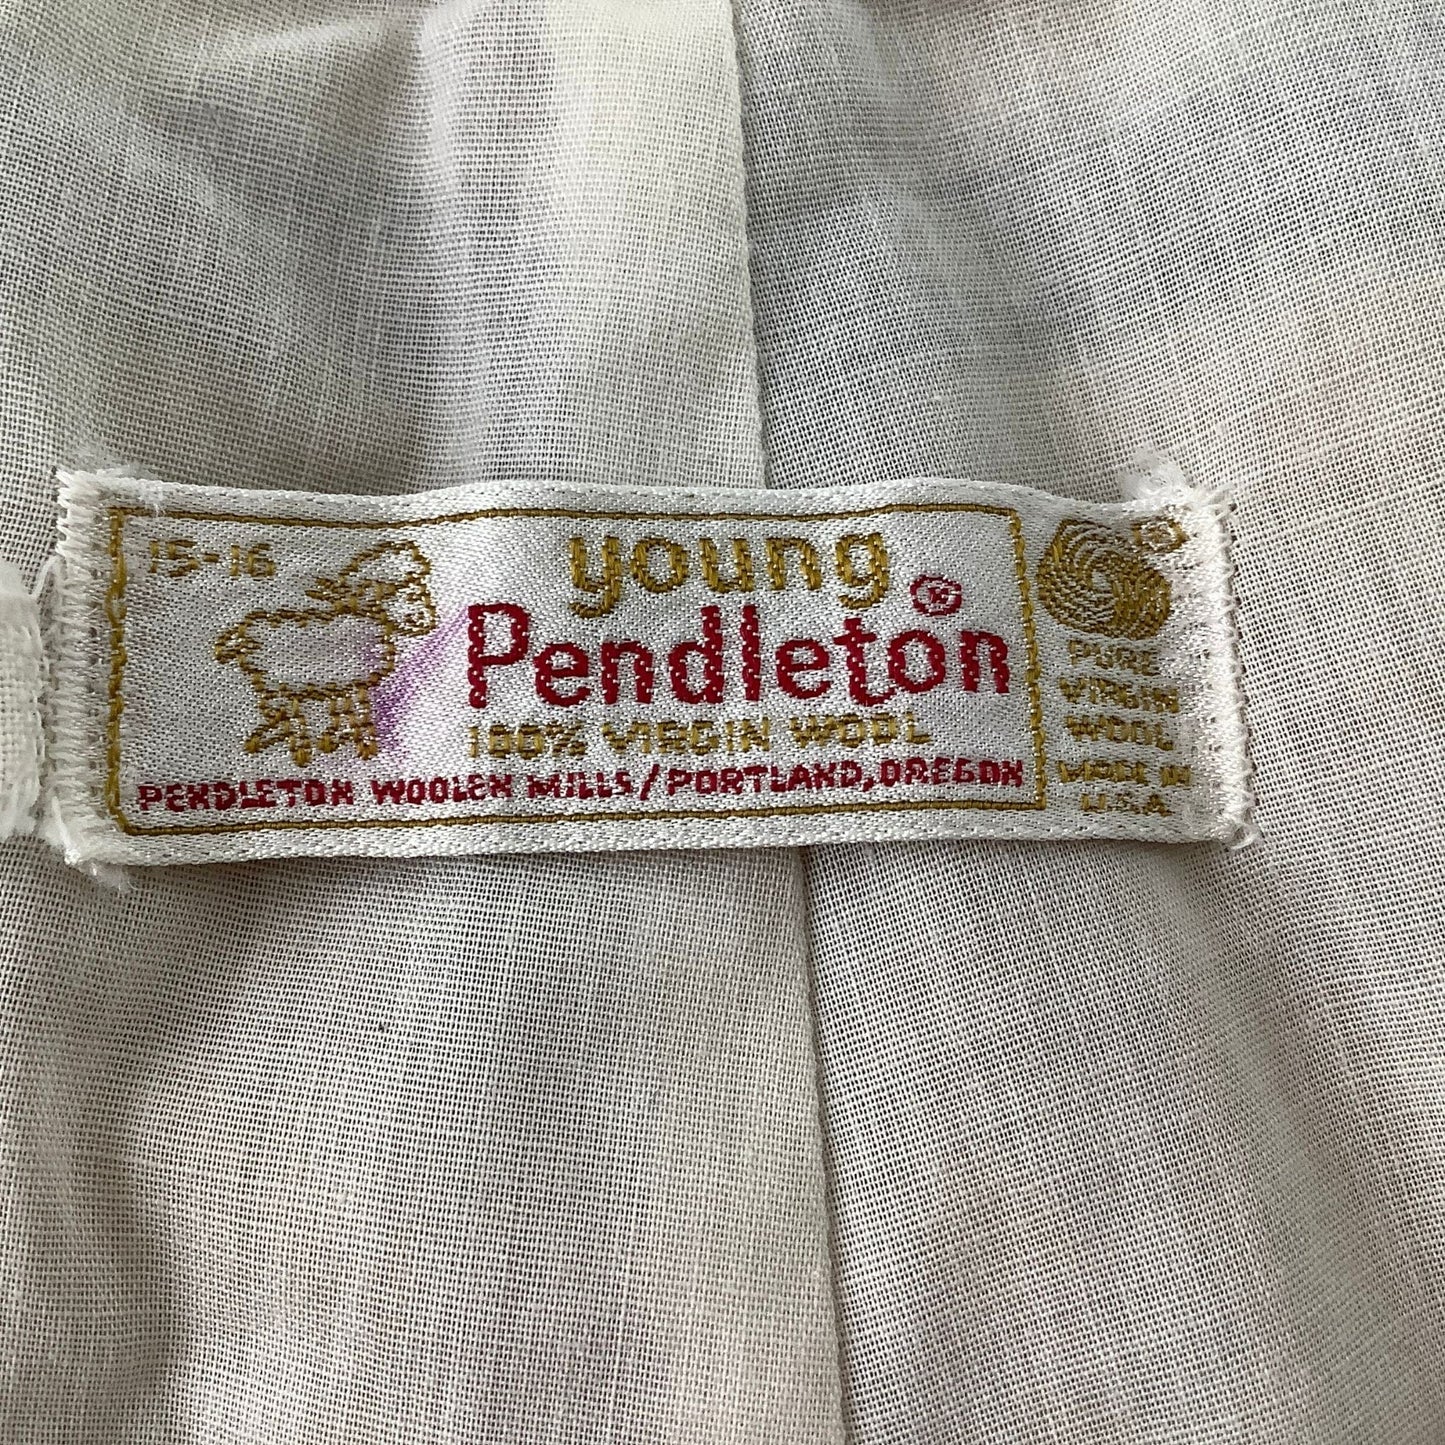 Vintage Pendleton Pants Medium / Multi / Vintage 1970s